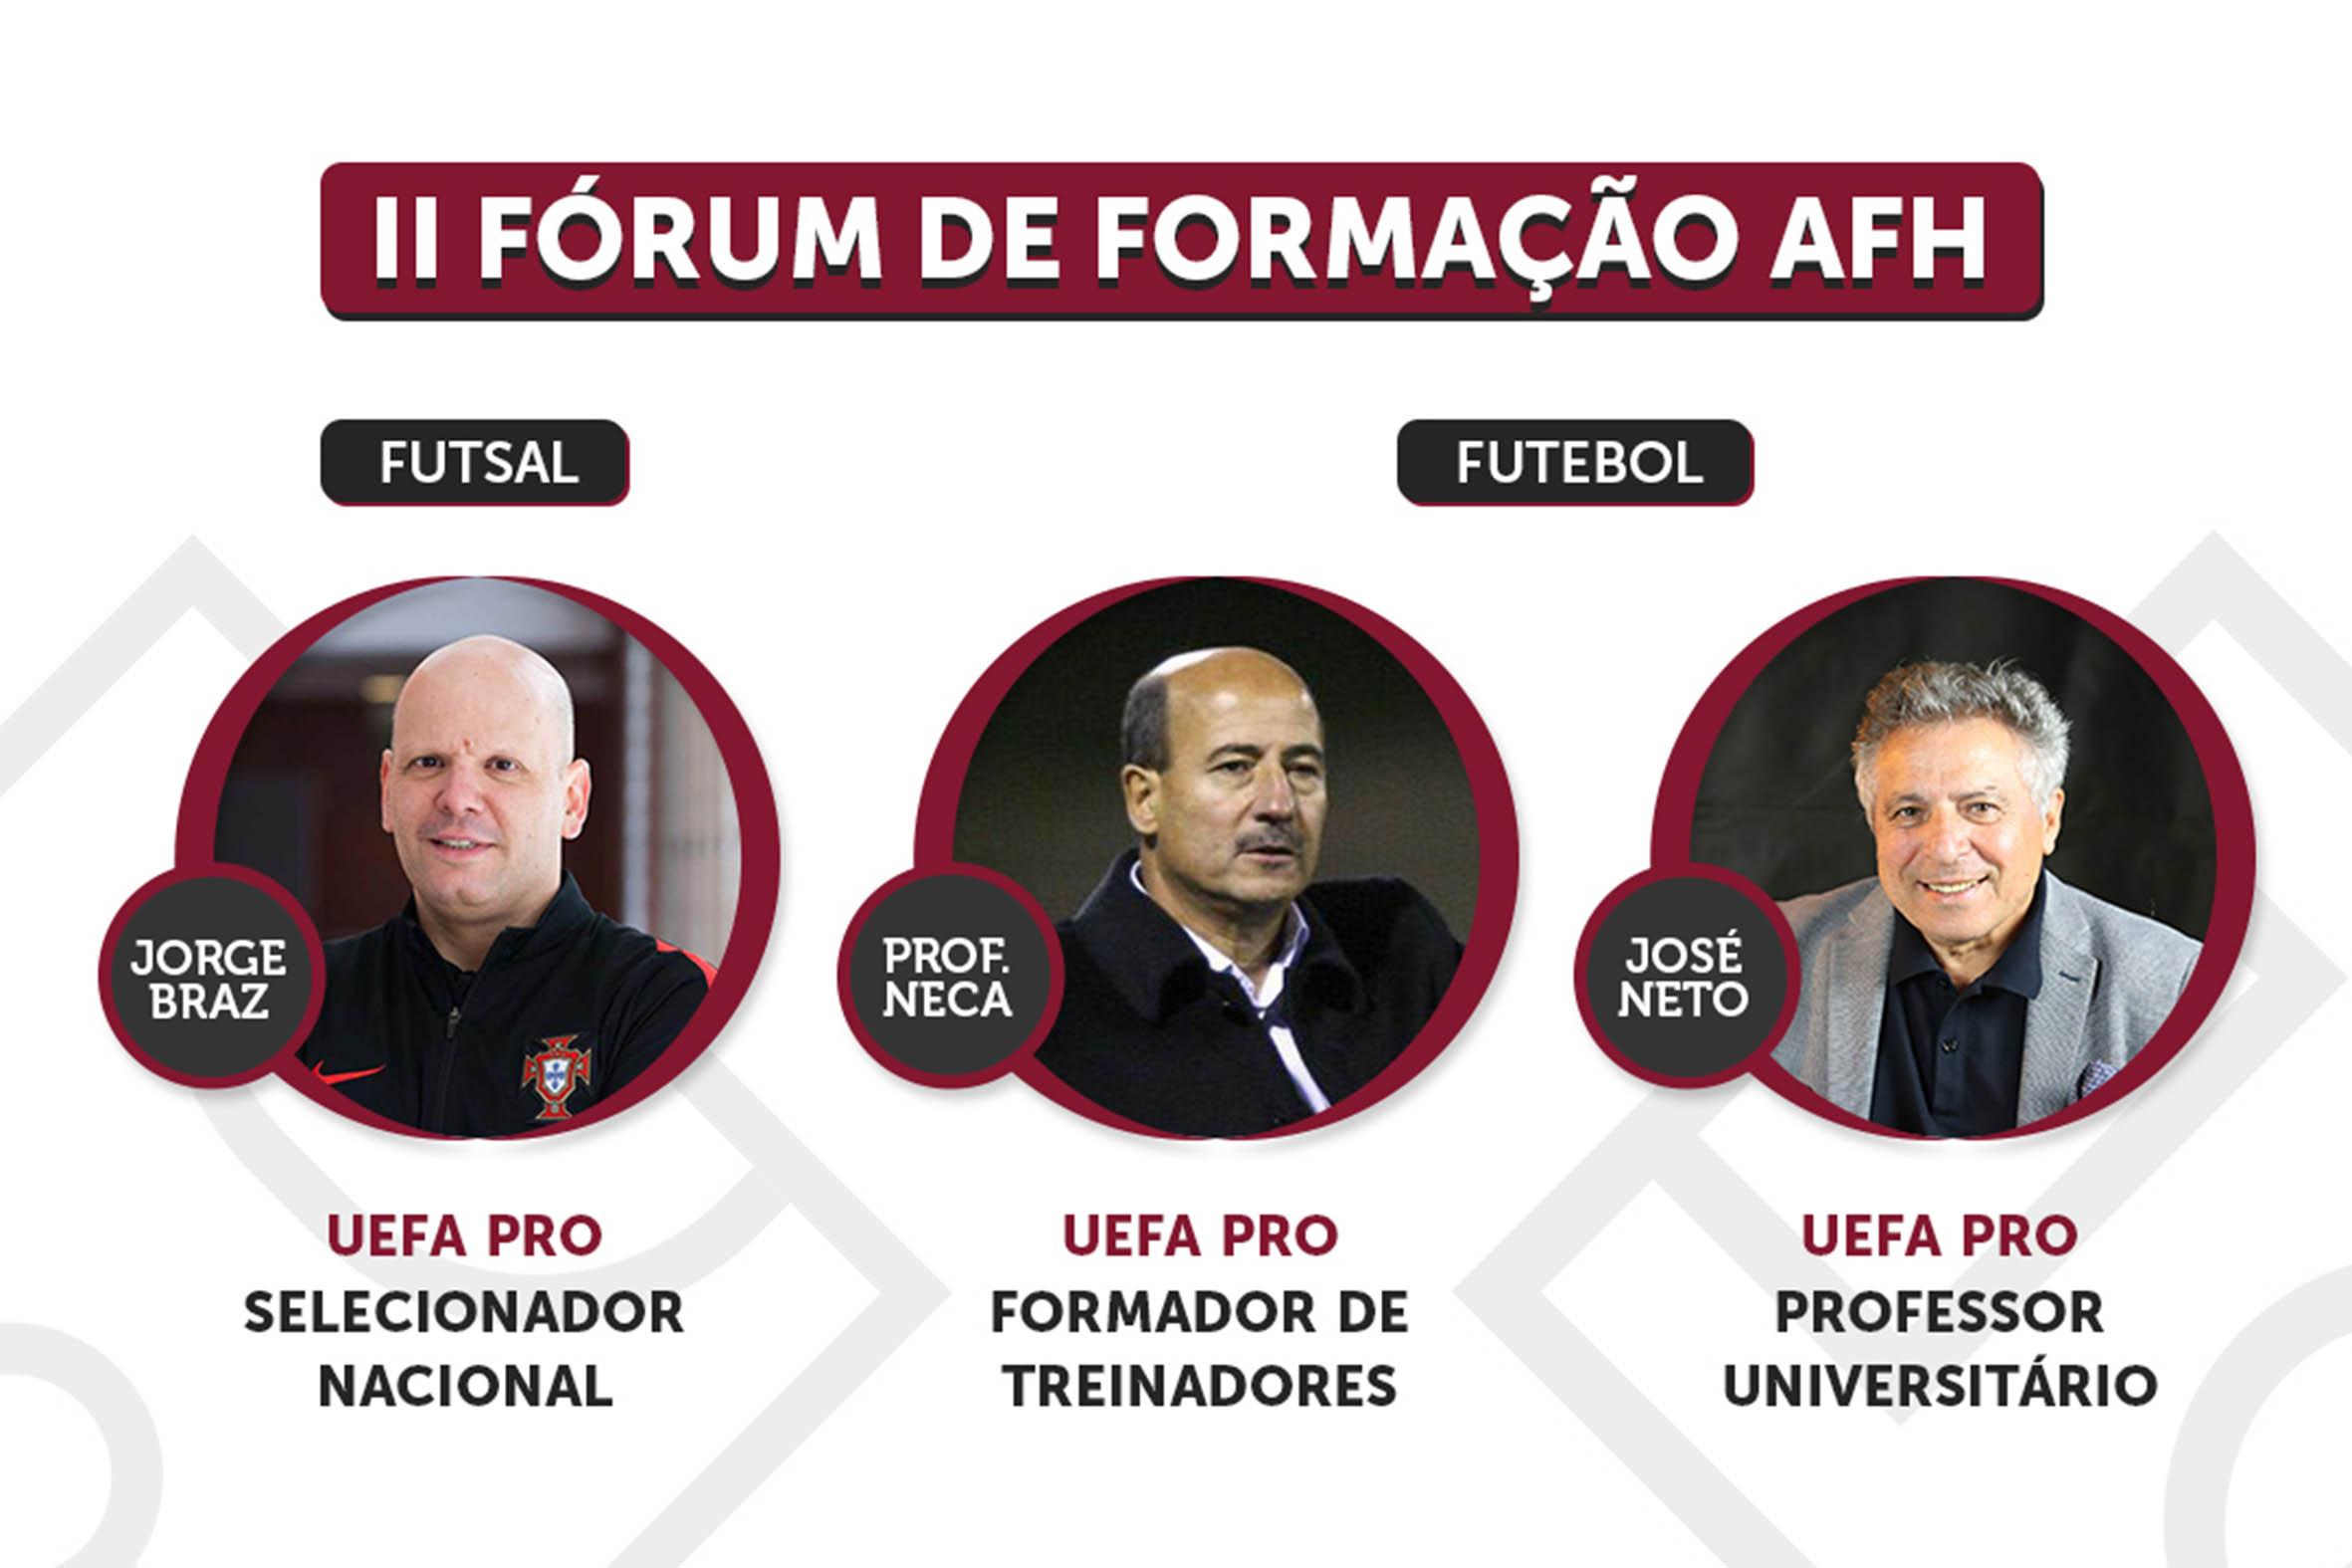 II Fórum de Formação AFH - Formação Contínua de Futebol e Futsal